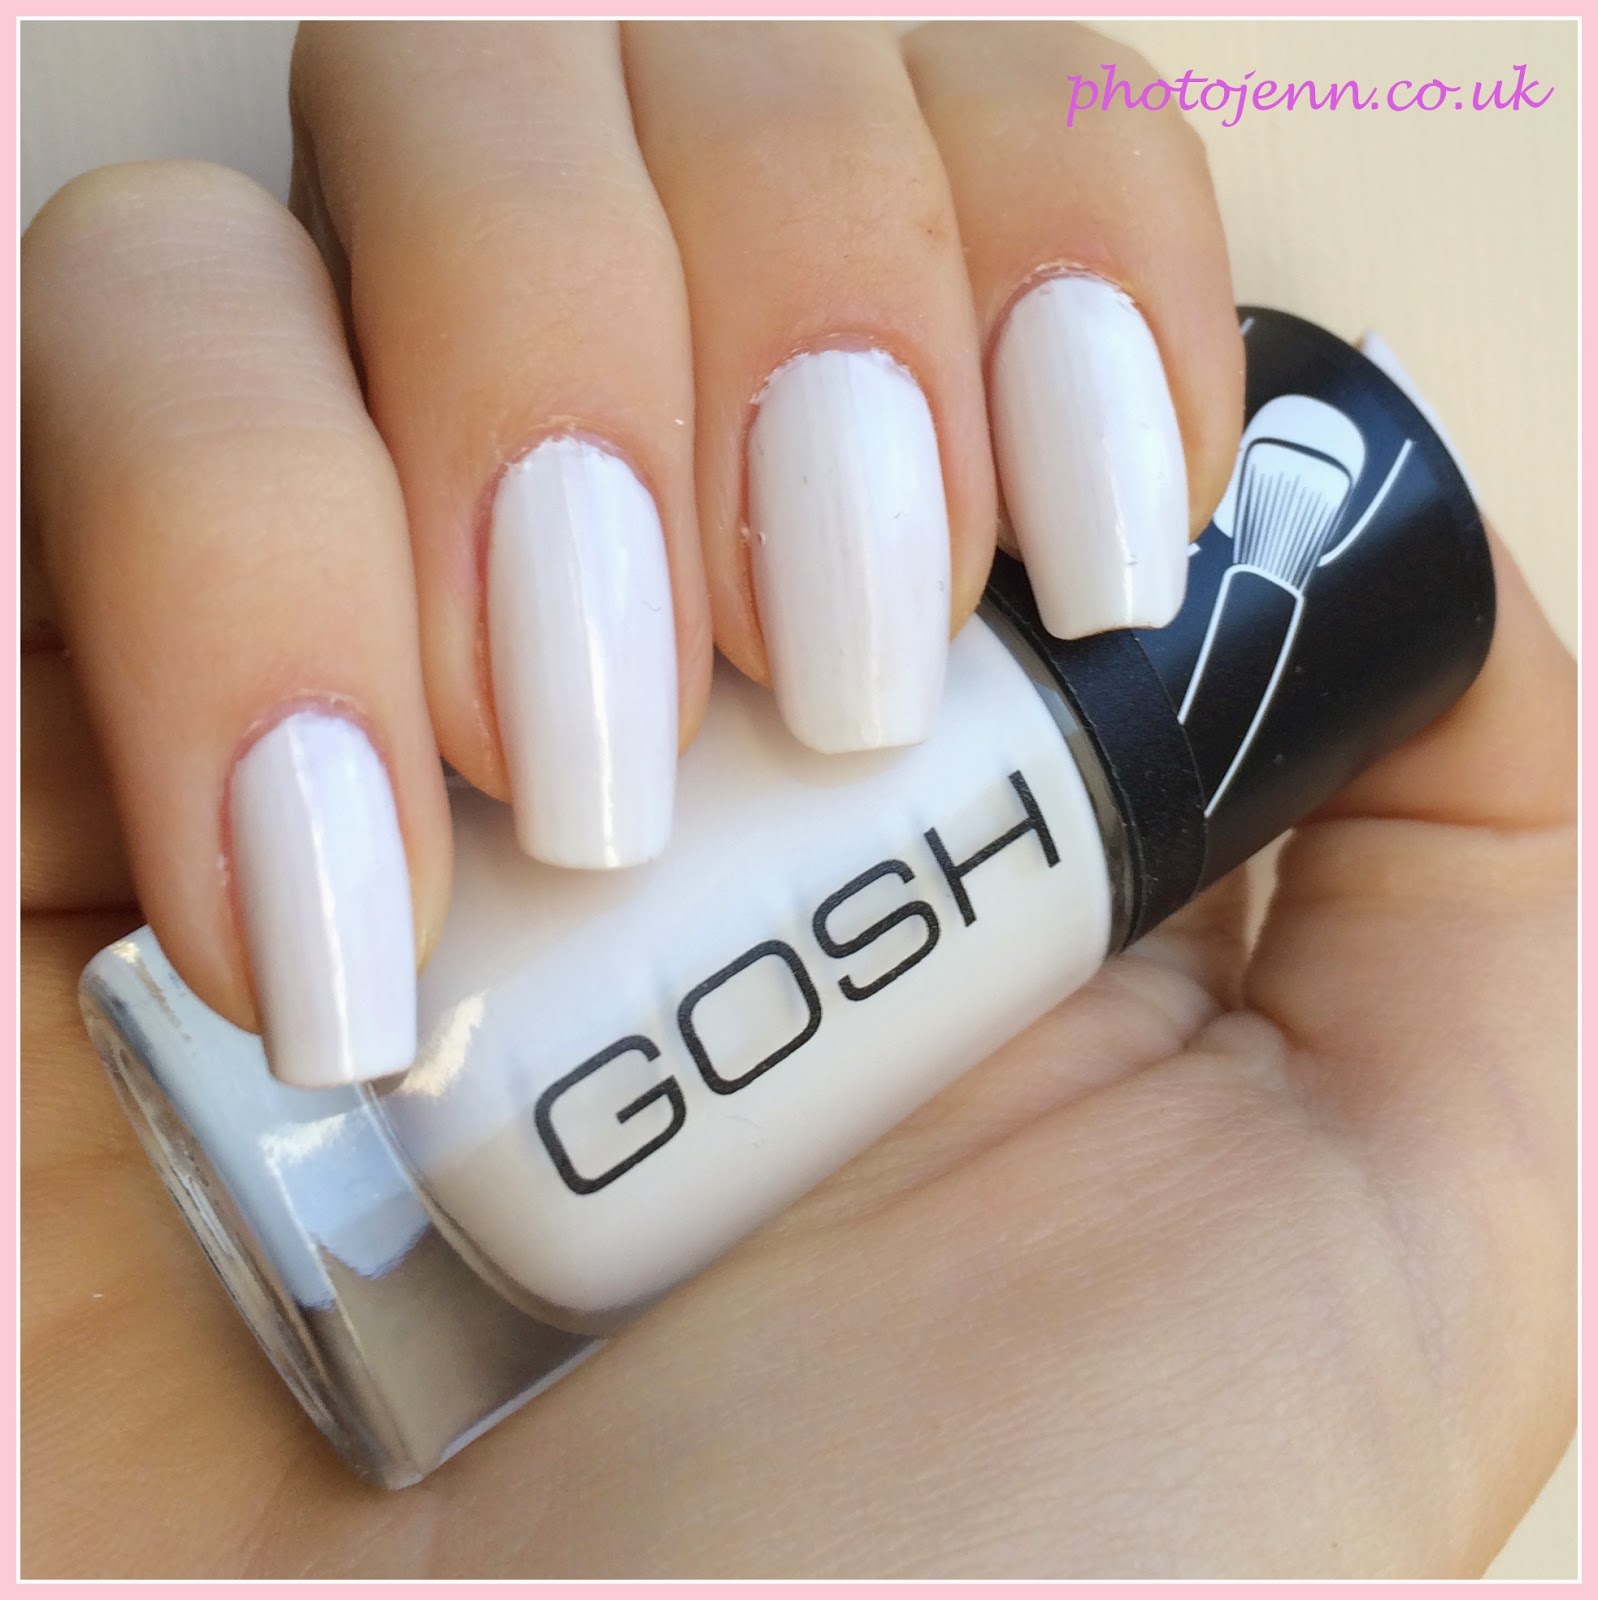 gosh-nail-lacquer-634-Snow-white